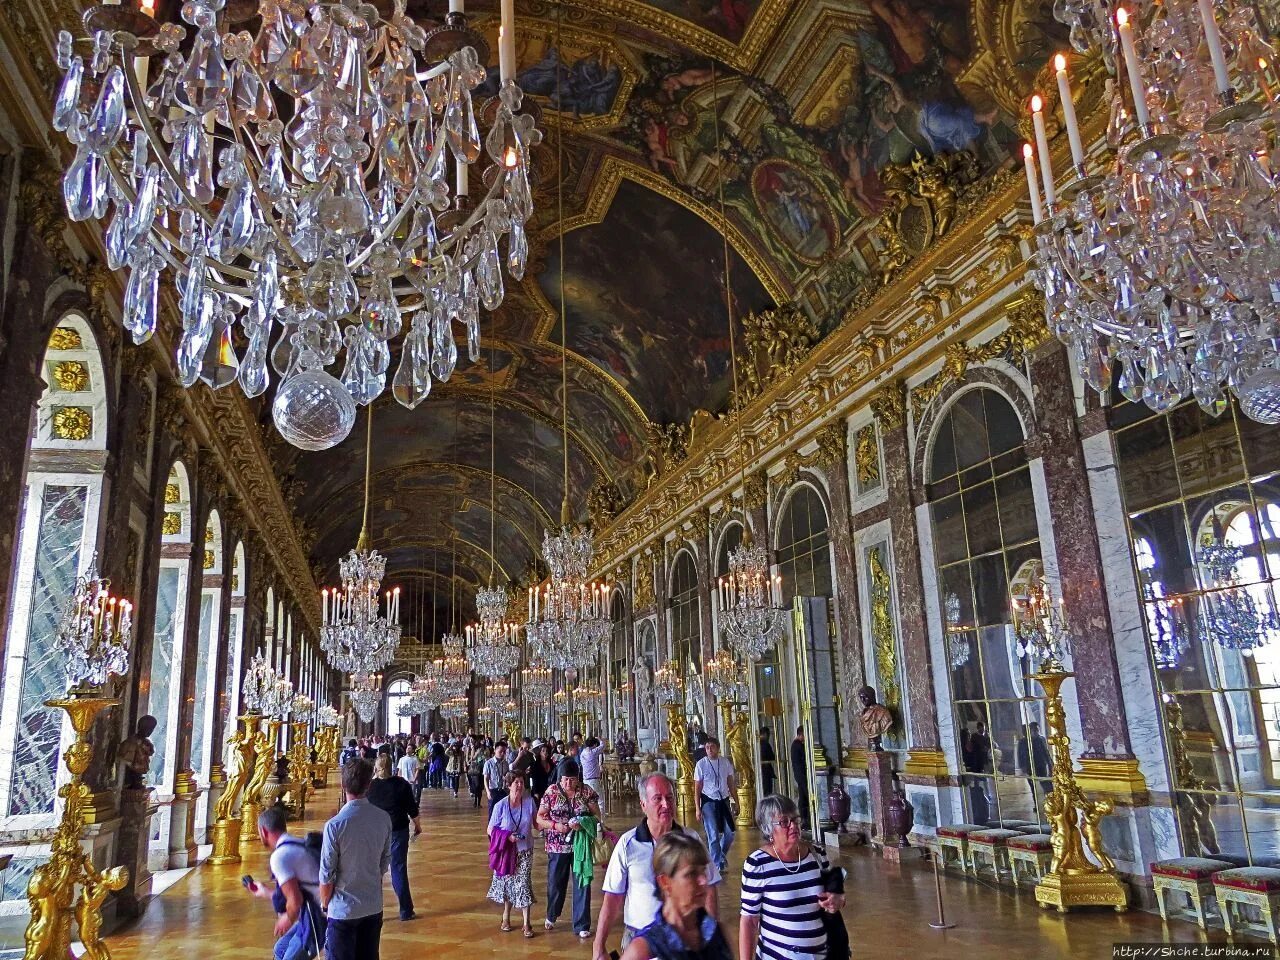 Галереи версаля. Зеркальная галерея Версальского дворца. Королевская часовня Версальского дворца. Зеркальный зал Версальского дворца. Версаль галерея дворца.